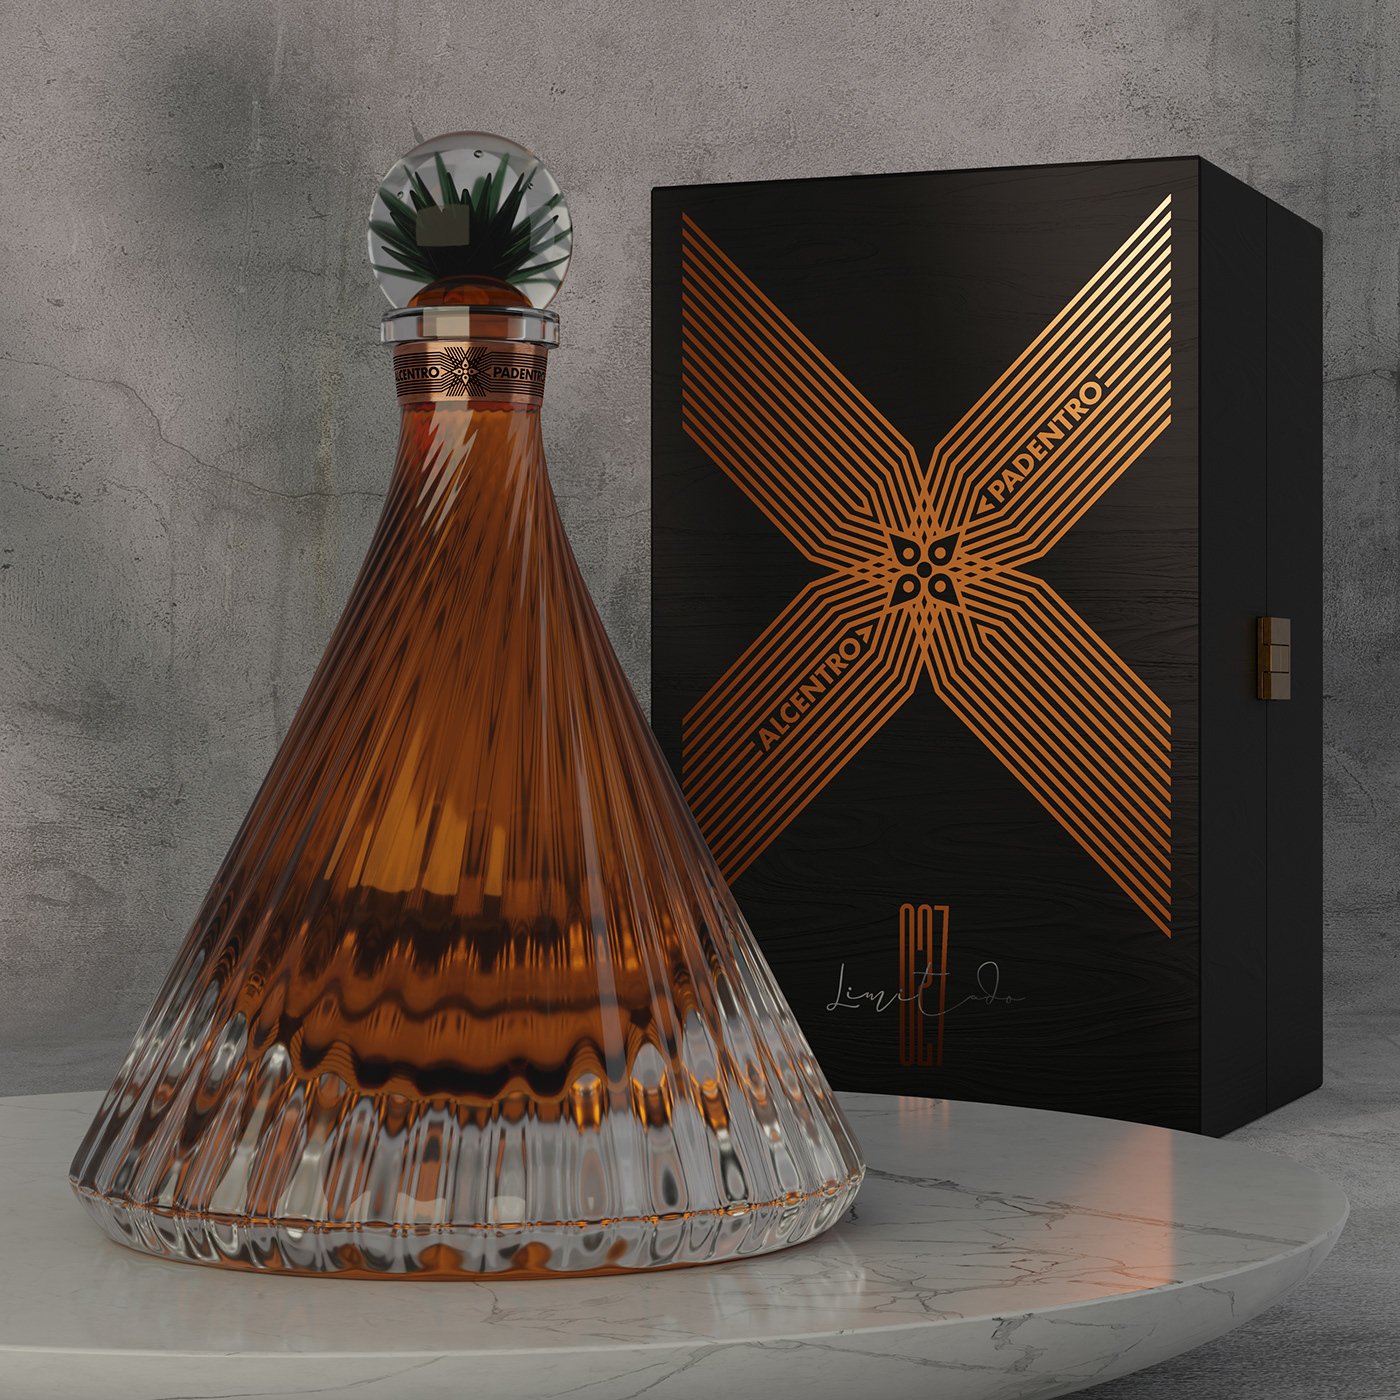 Tequila Packaging liquor bottle design luxury パッケージデザイン